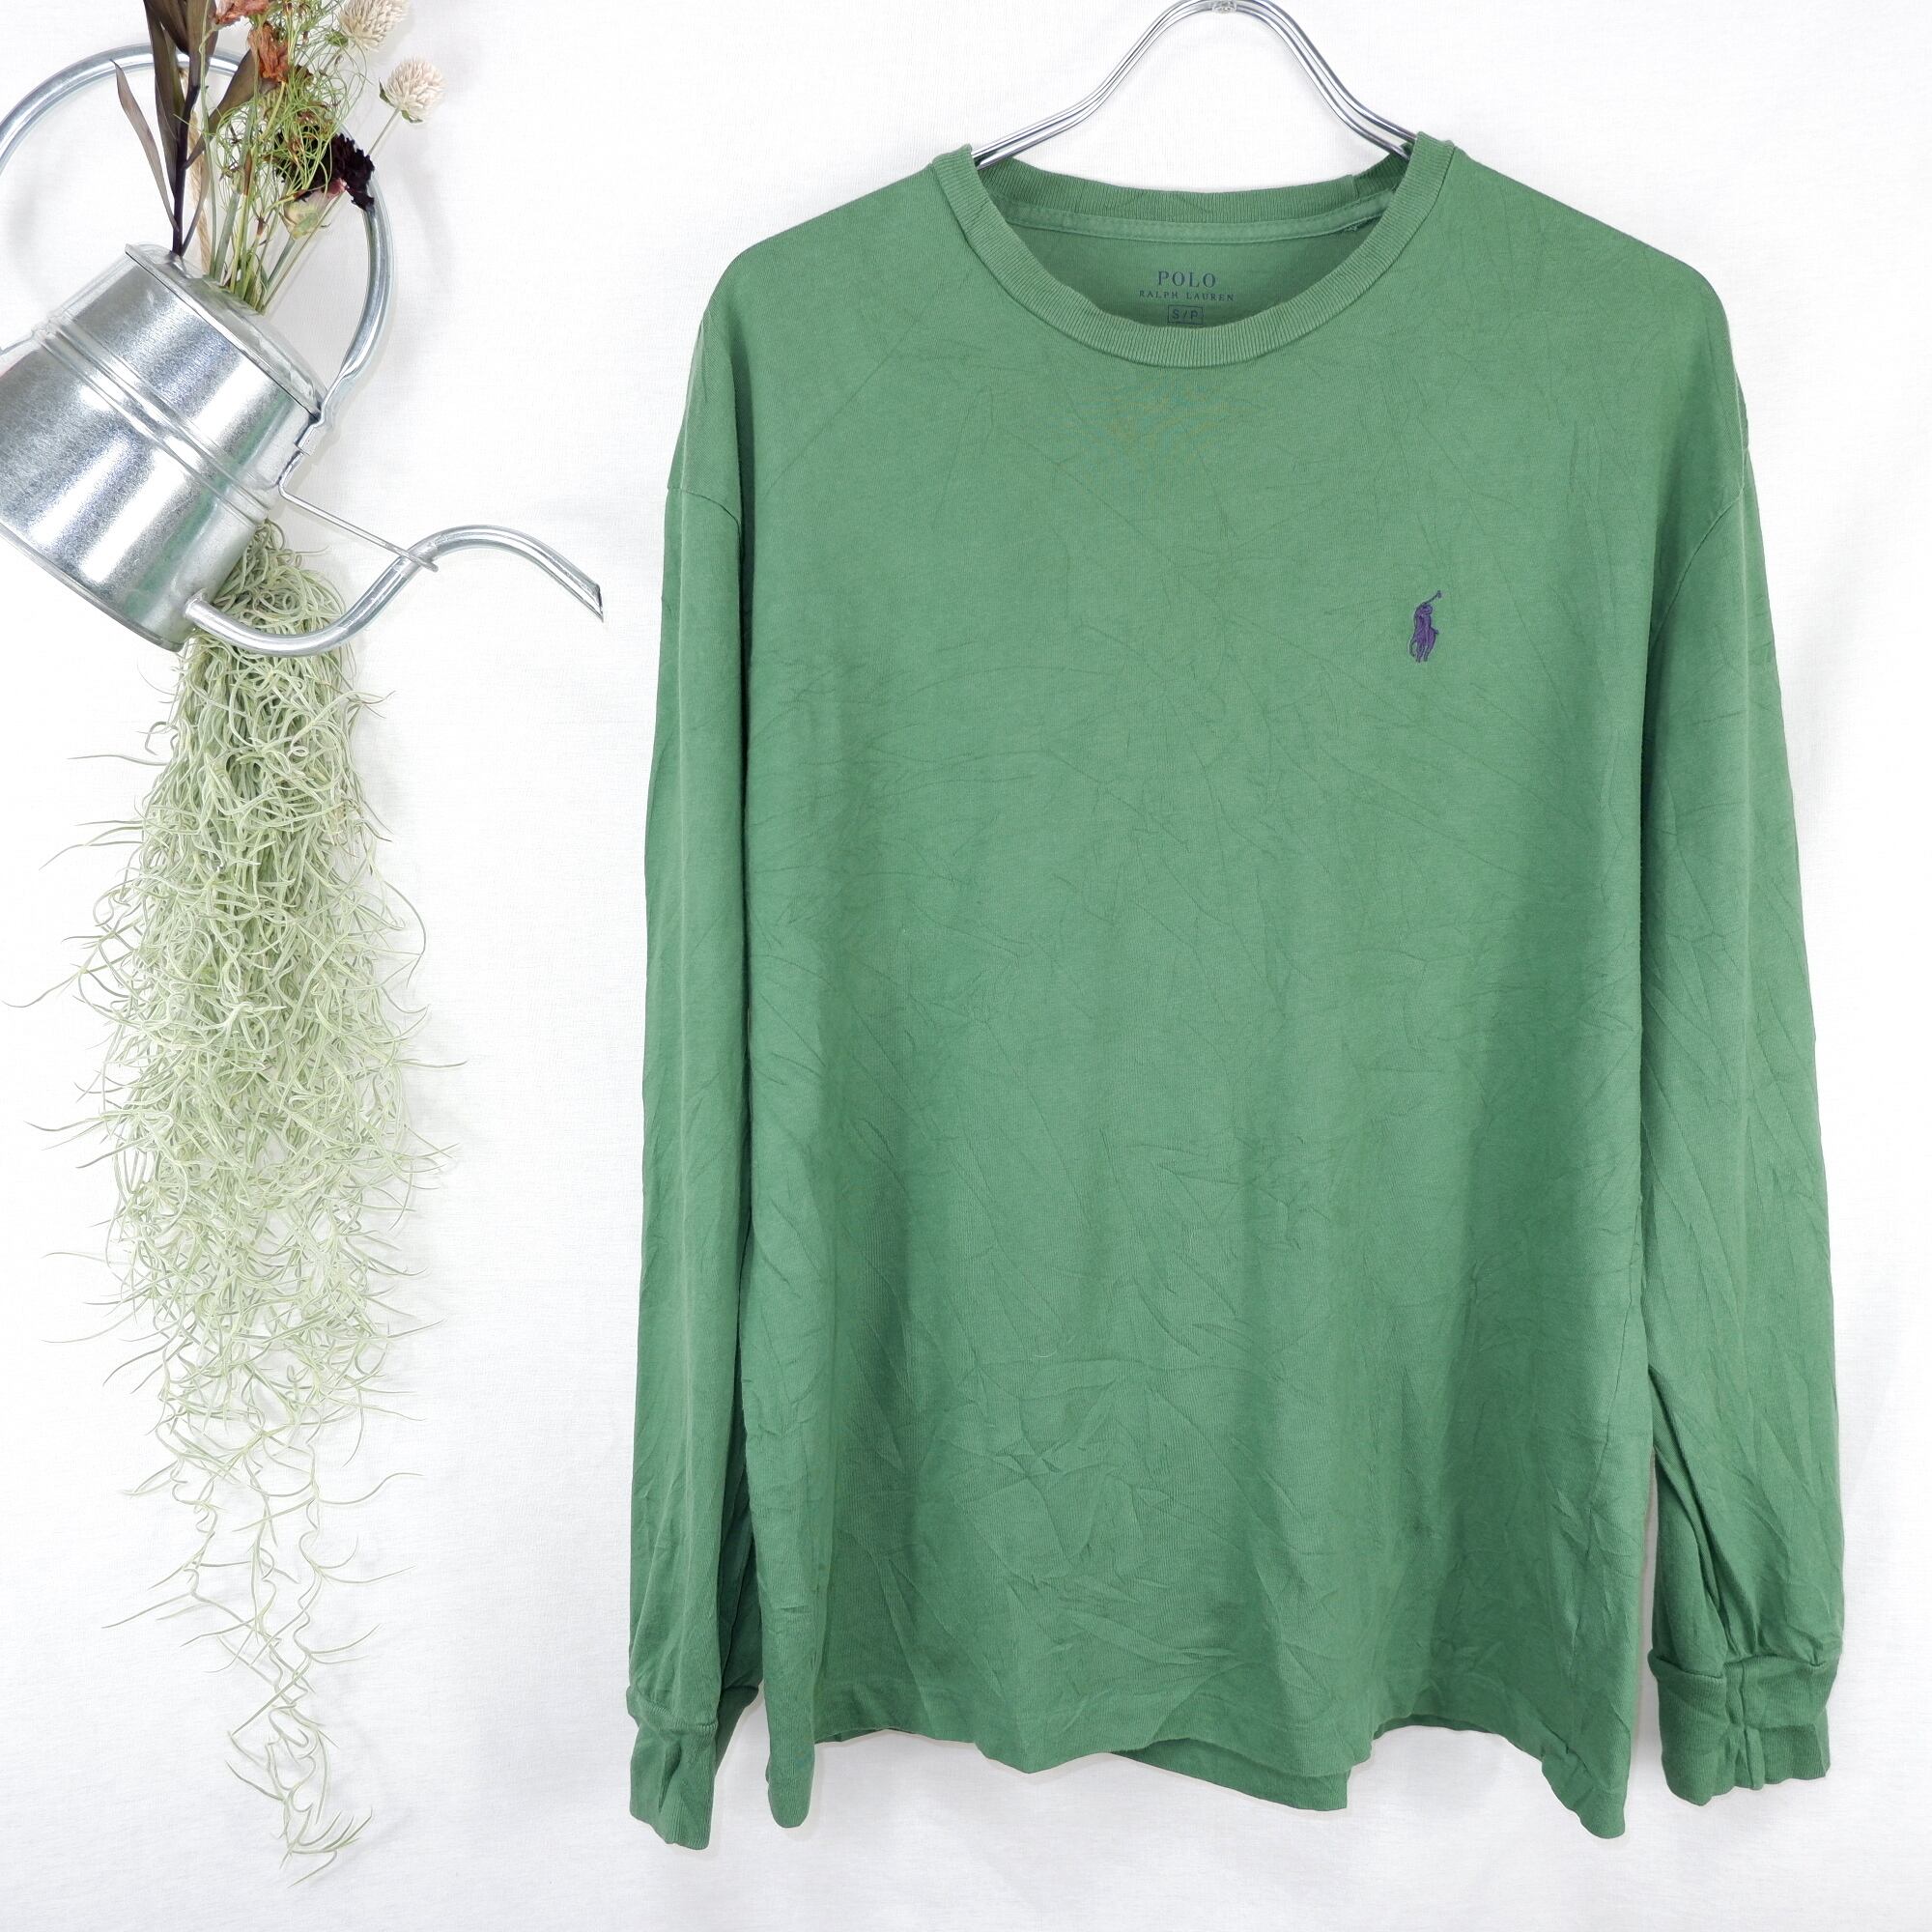 S] Polo Ralph Lauren Green L/S Tee | ポロ ラルフローレン 緑 ロングTシャツ |  きれいめや90sのメンズ古着専門店jo-Ro